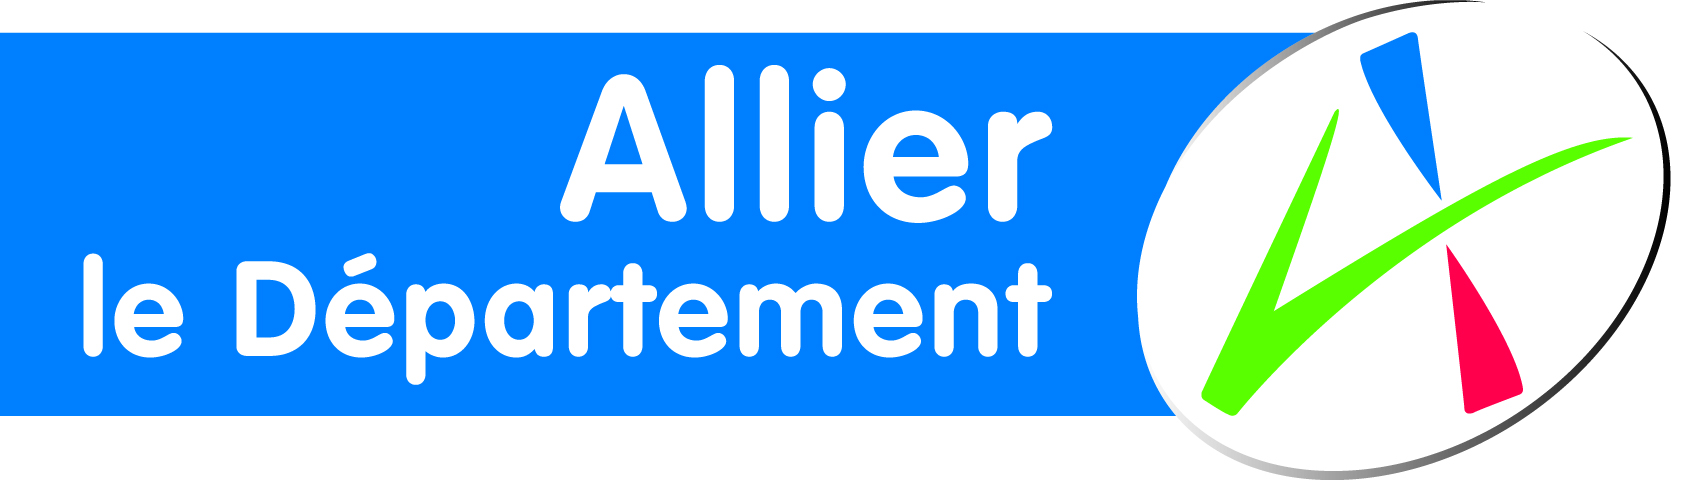 Département Allier